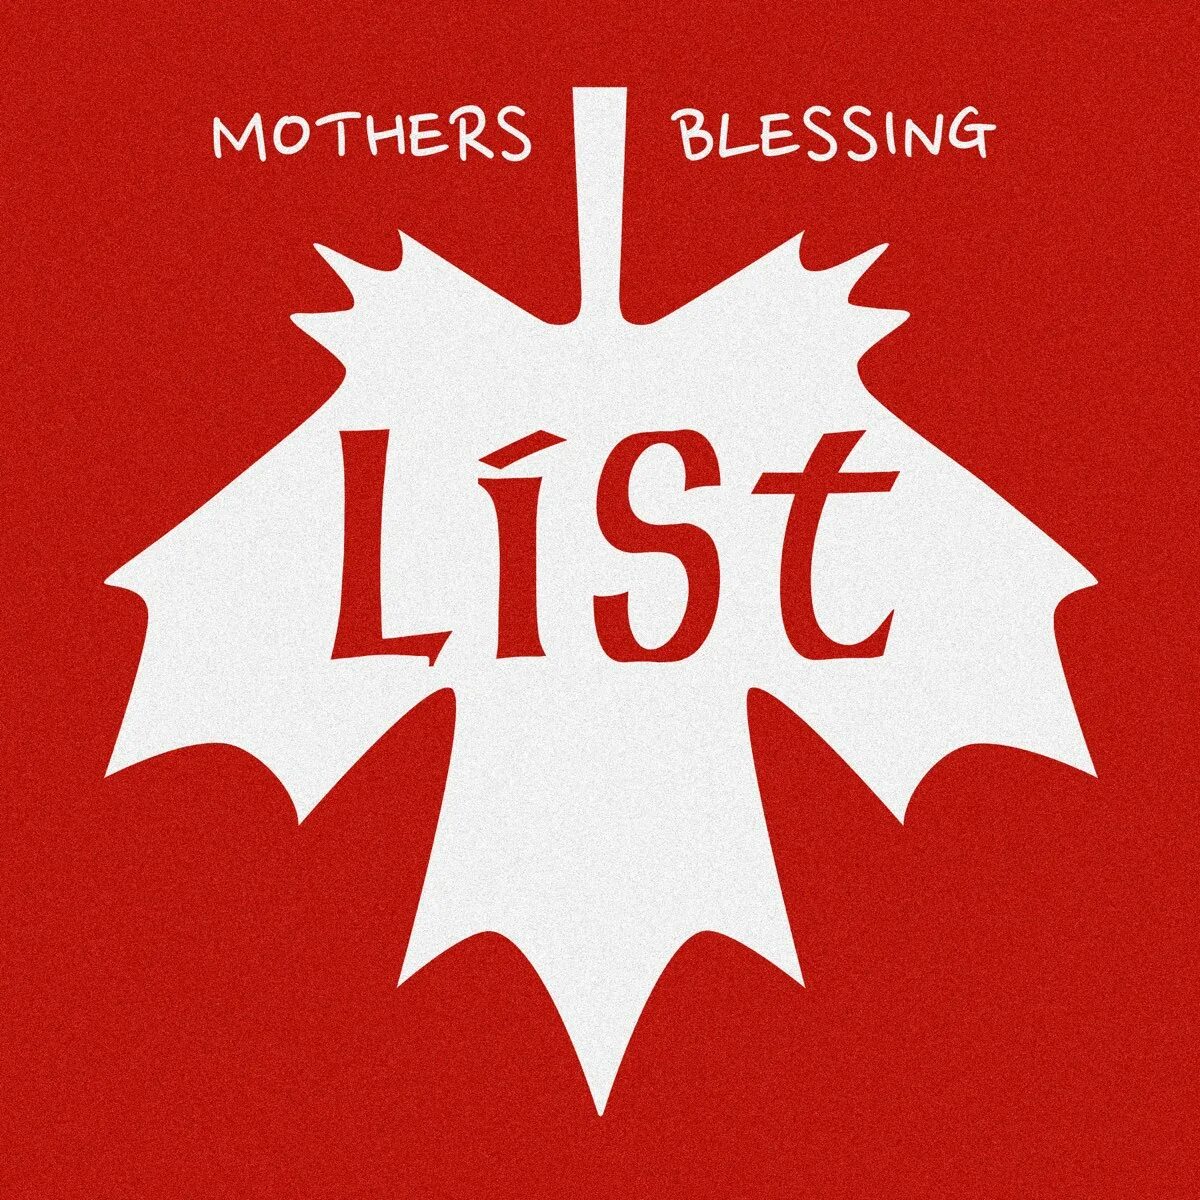 50 Blessings list.